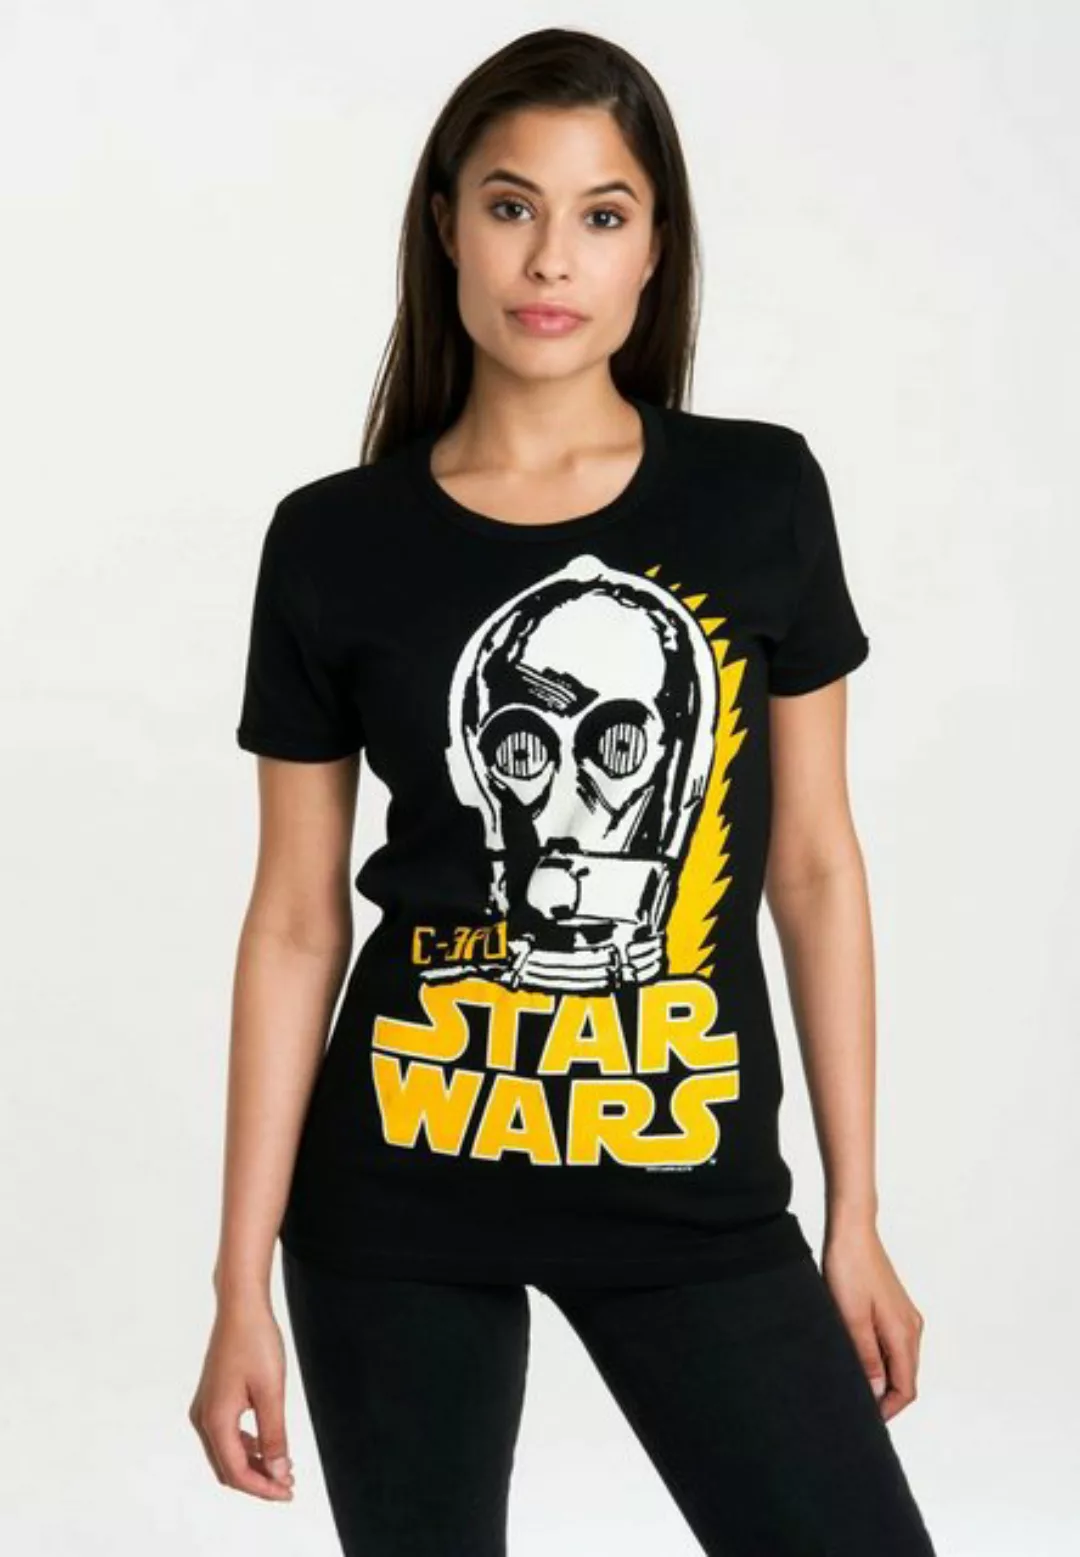 LOGOSHIRT T-Shirt C-3PO mit lizenziertem Originaldesign günstig online kaufen